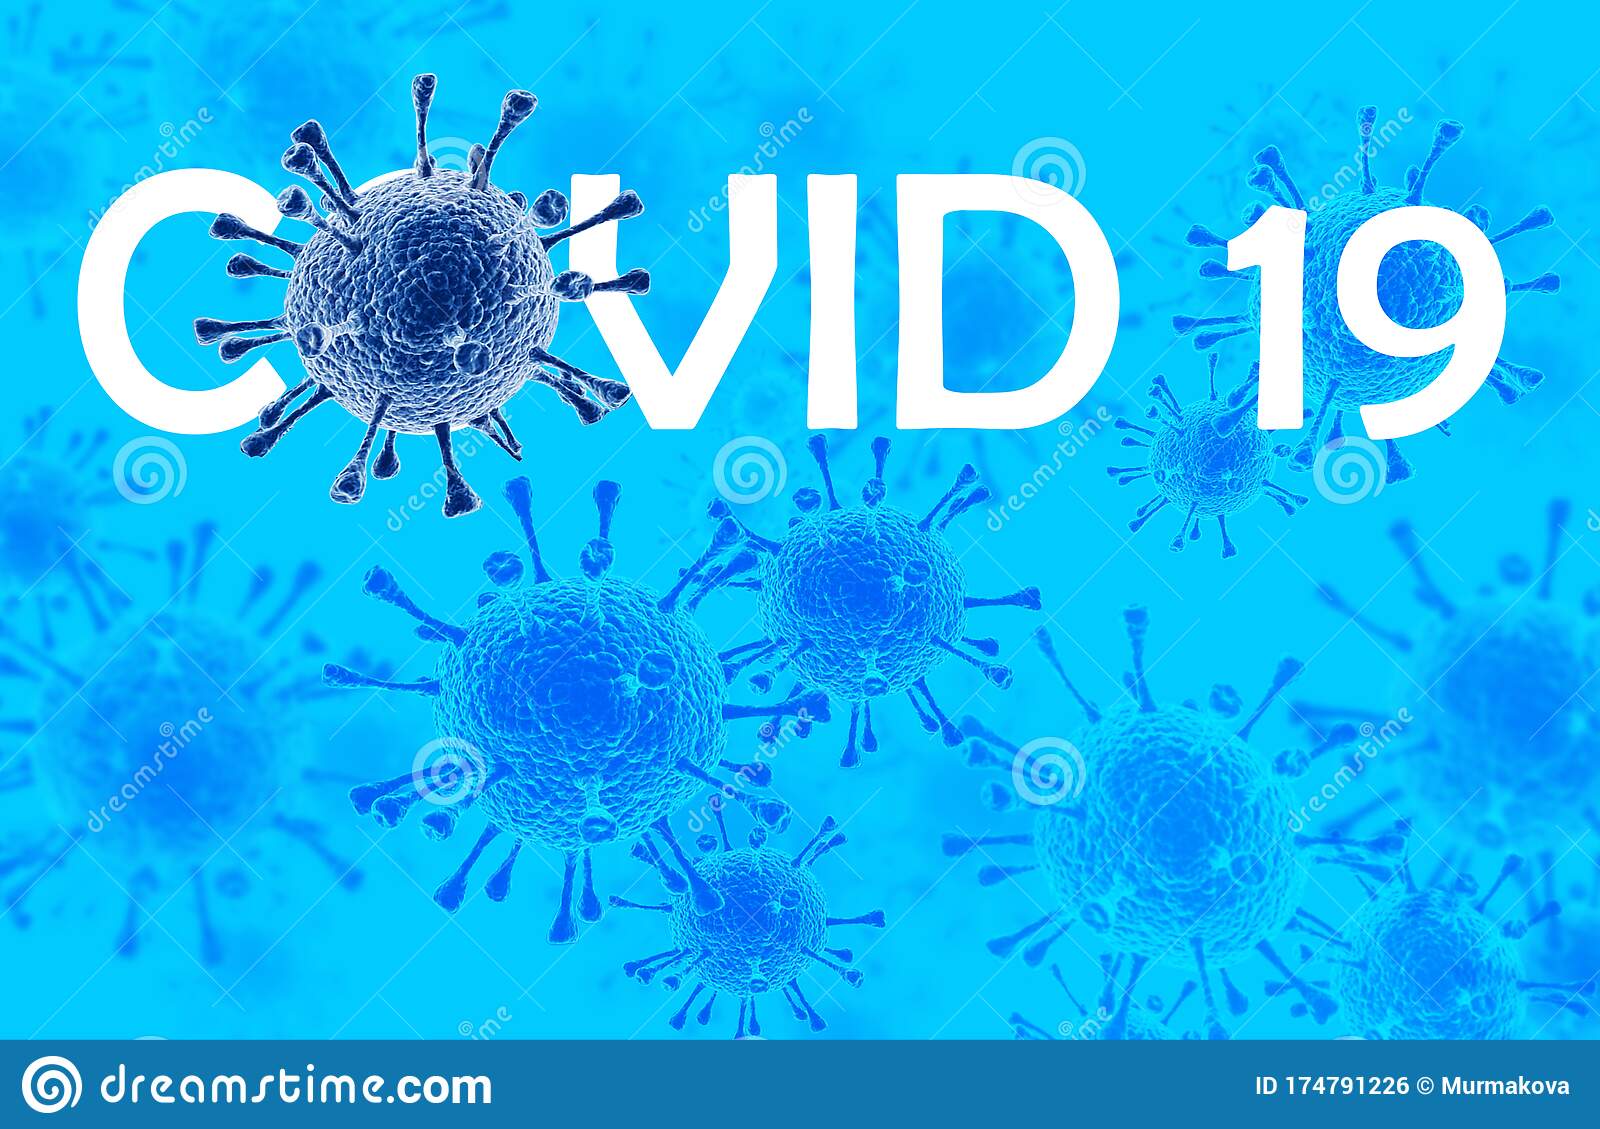 Ақтөбе облысы бойынша COVID-19 инфекциясының эпидемиологиялық жағдайы туралы 25 11 20